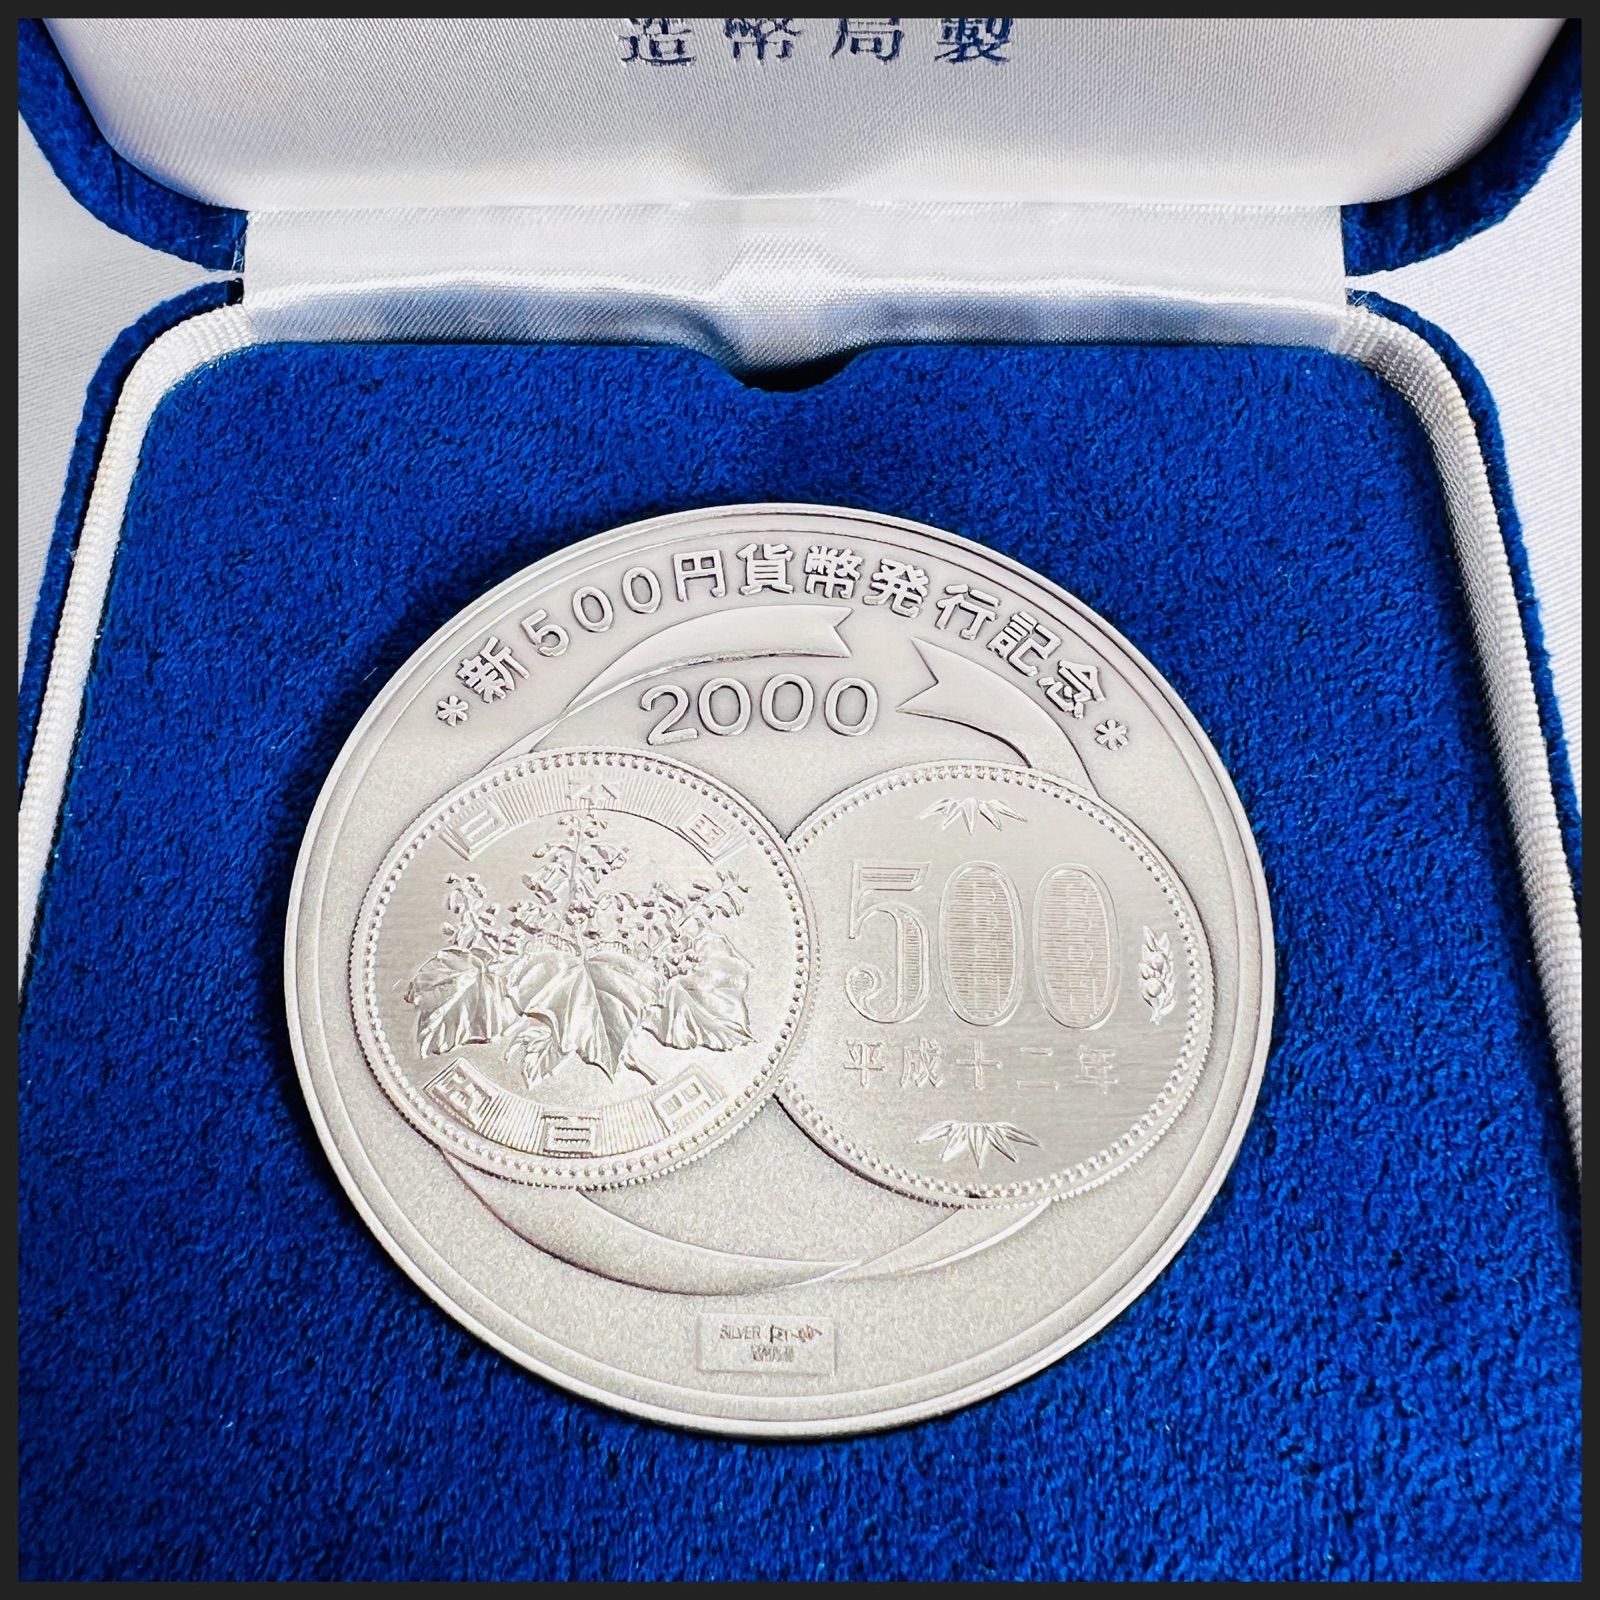 公式新500円硬貨 発行記念メダル コレクション